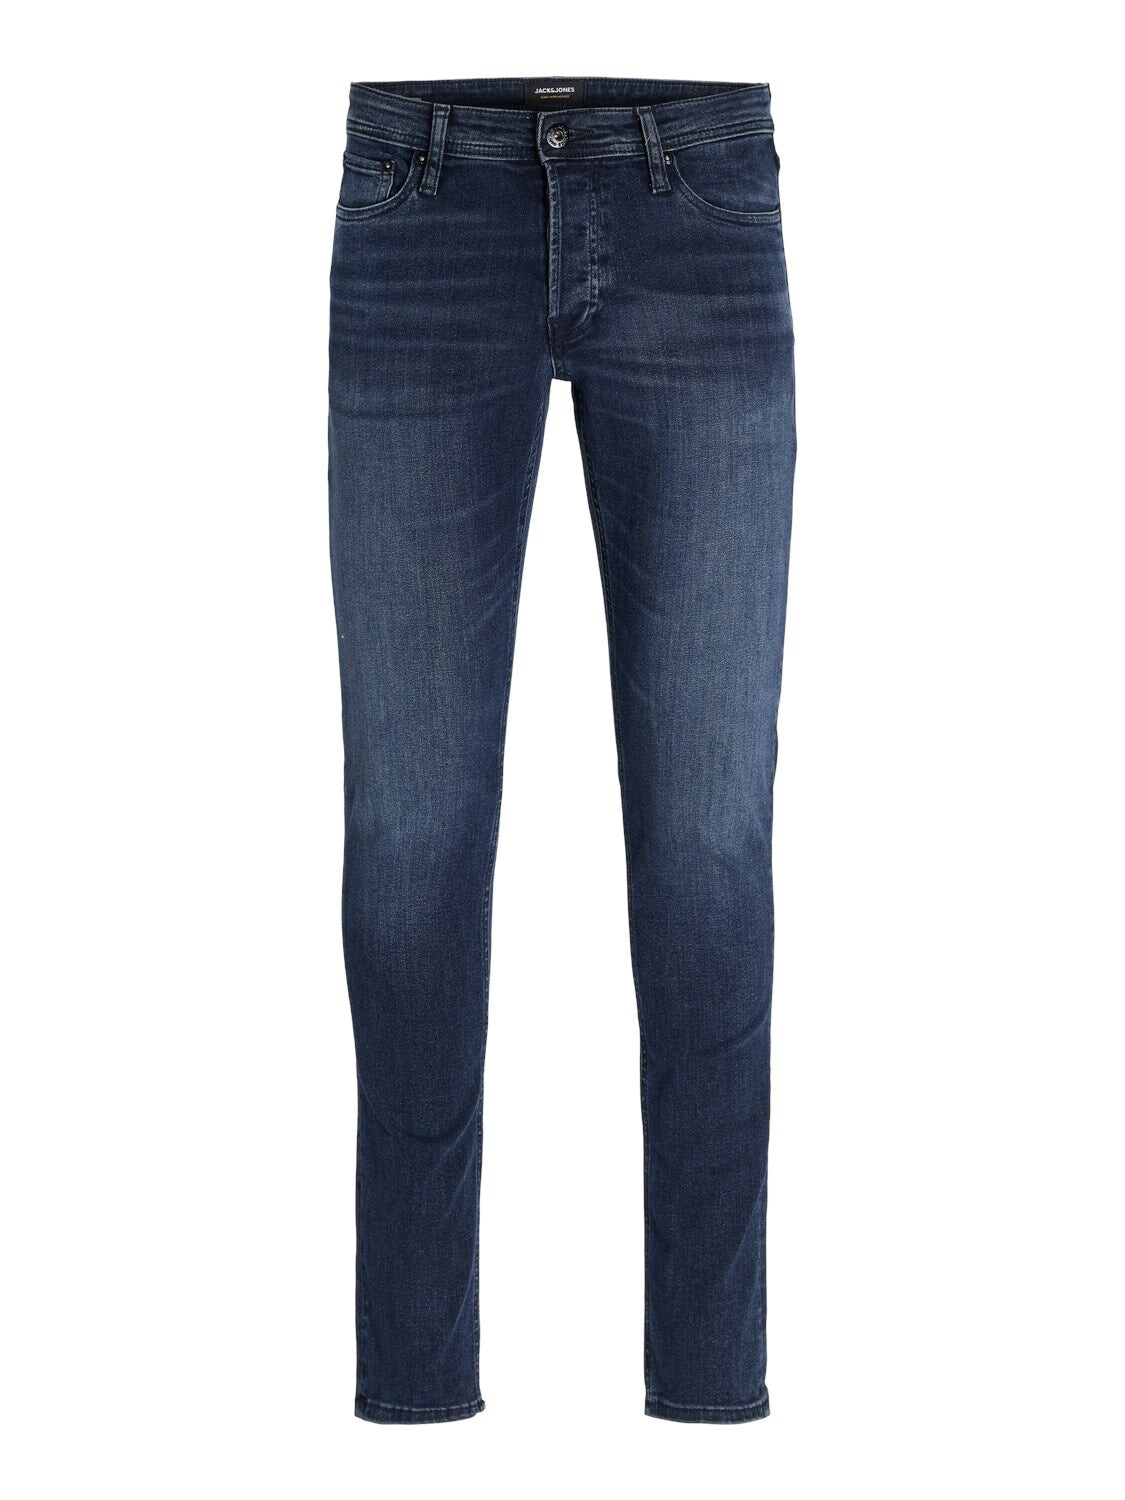 JACK & JONES Slim-Fit Jeans 'JJIGLENN JJORIGINAL AM 812 NOOS' Blue Denim, Unifarben, Blau - Gr. 32 x 34